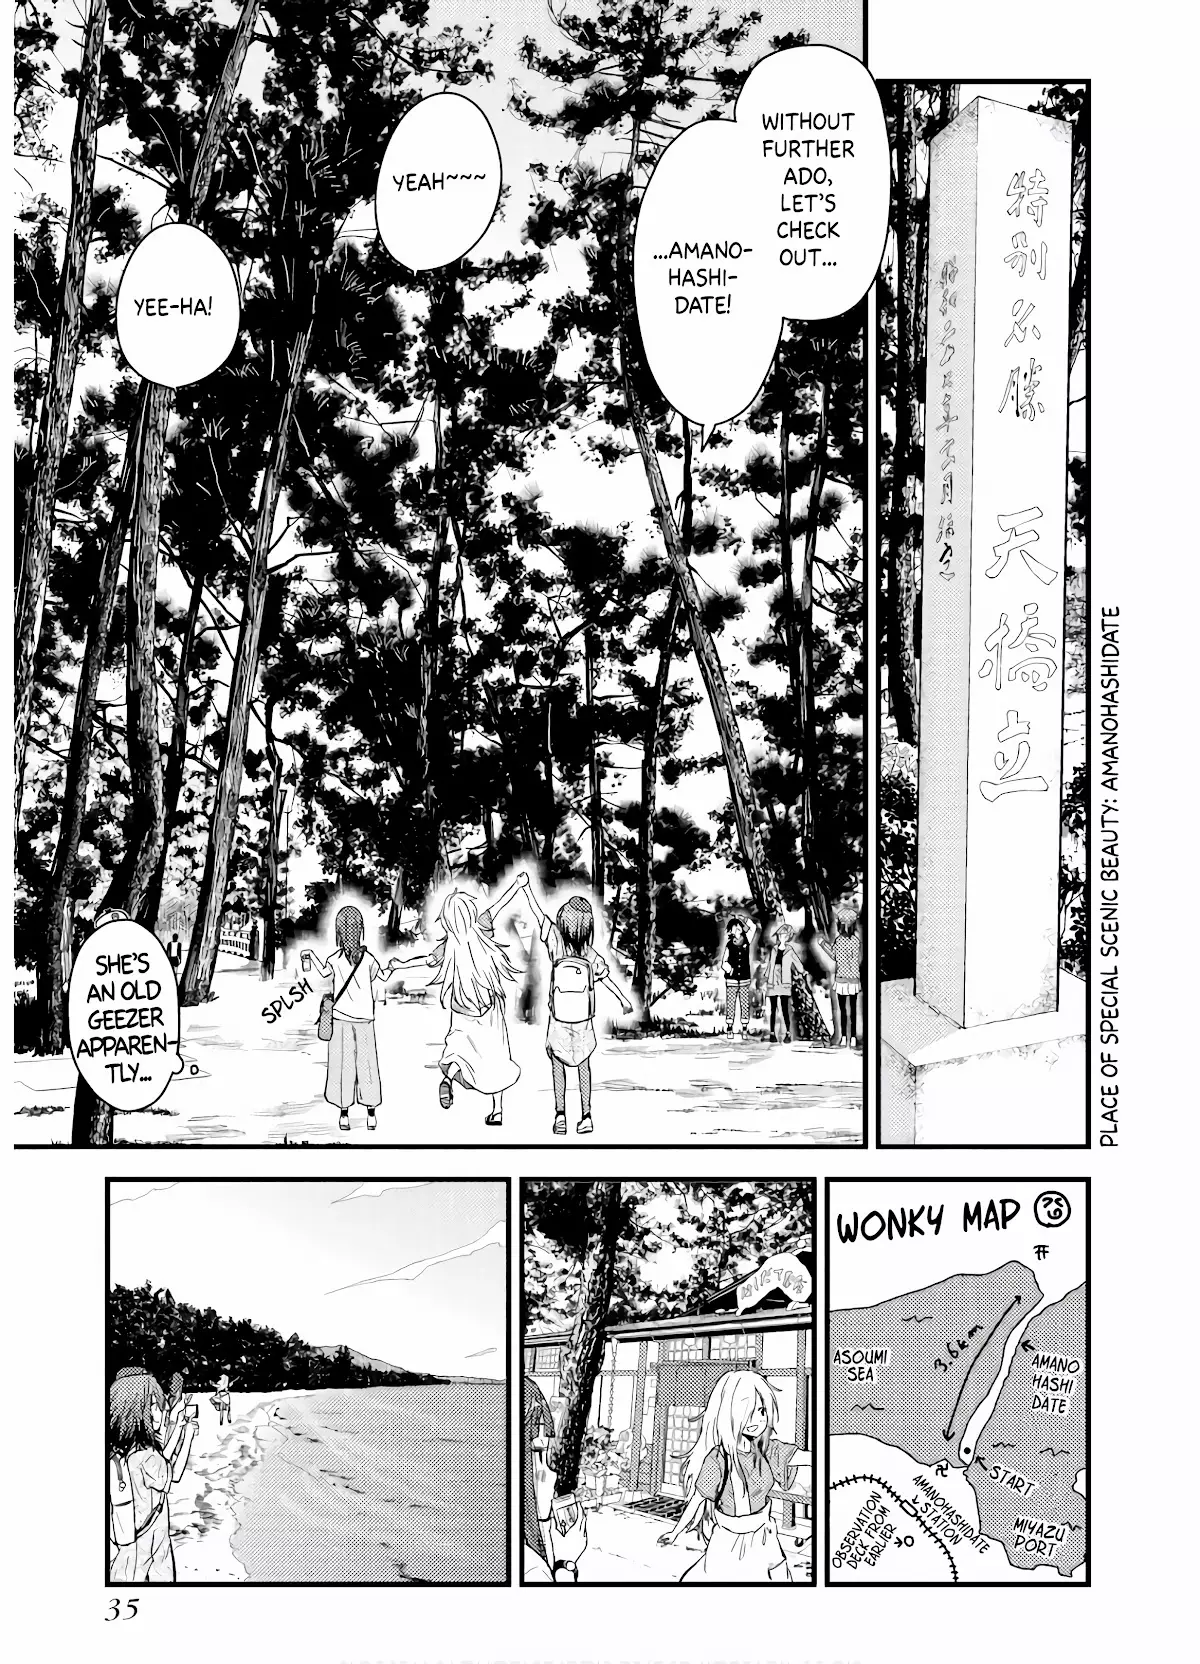 Zatsu Tabi: That's Journey - 5 page 34-38009284